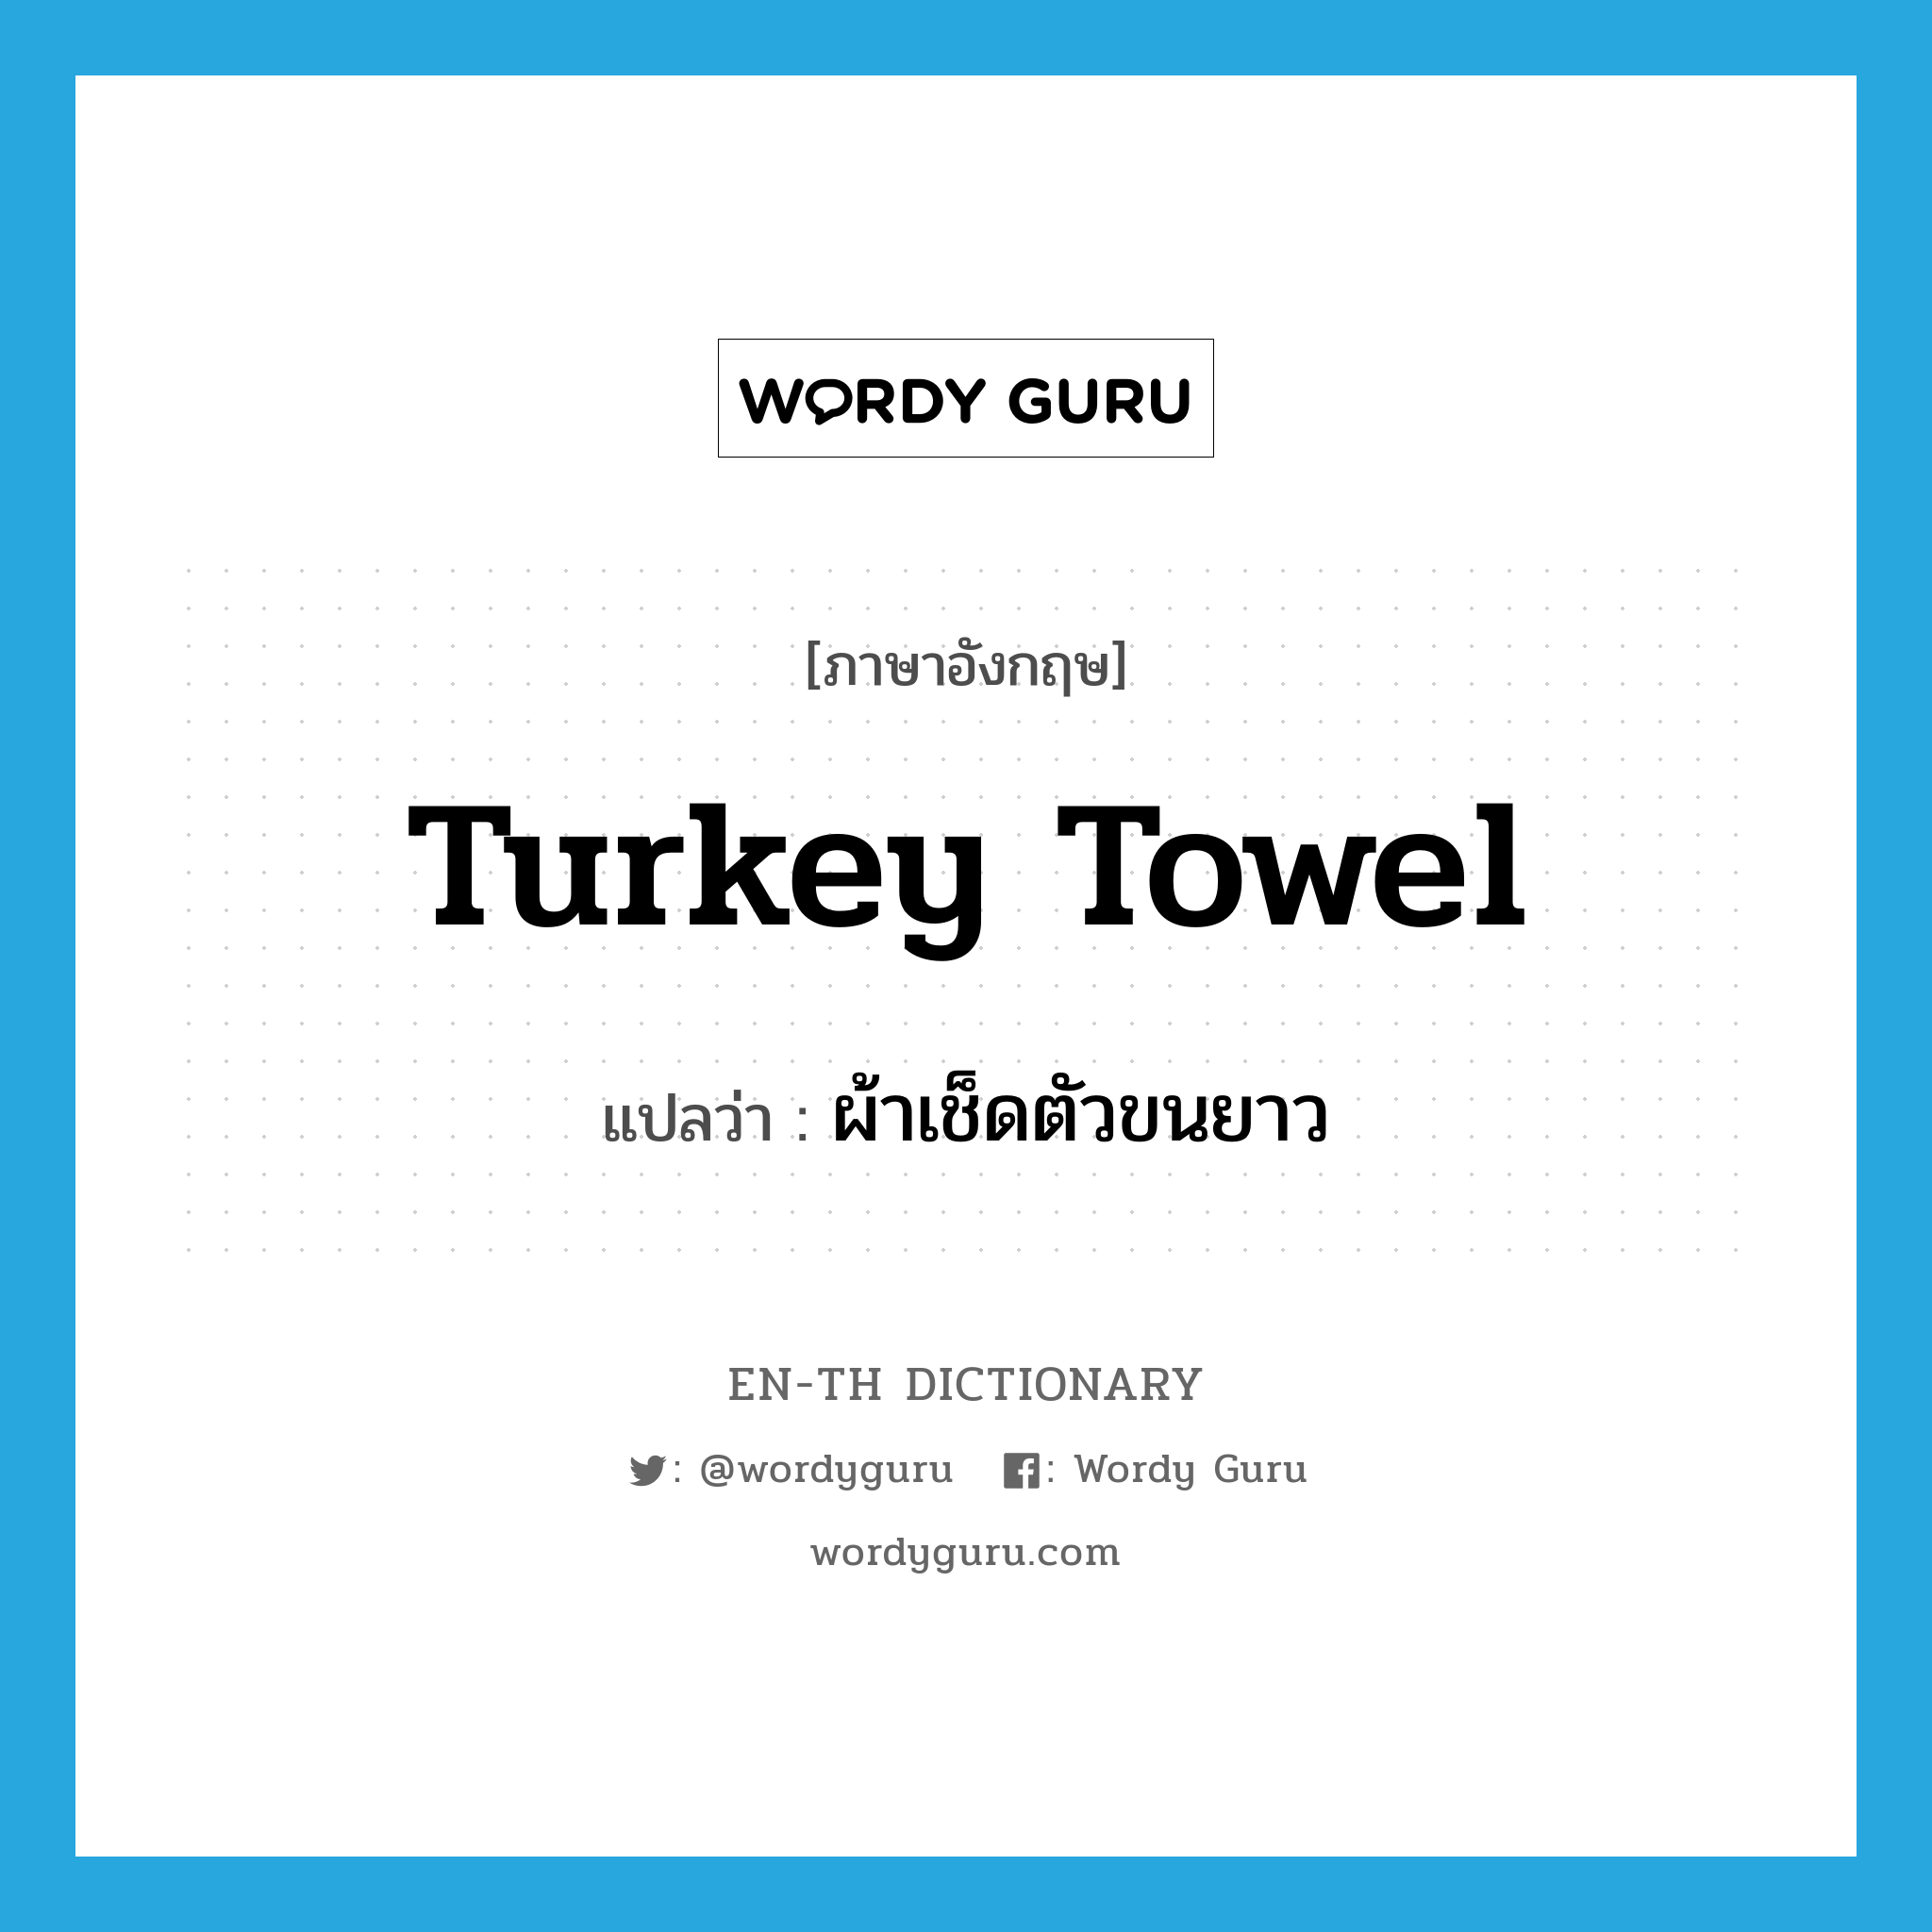 ผ้าเช็ดตัวขนยาว ภาษาอังกฤษ?, คำศัพท์ภาษาอังกฤษ ผ้าเช็ดตัวขนยาว แปลว่า Turkey towel ประเภท N หมวด N